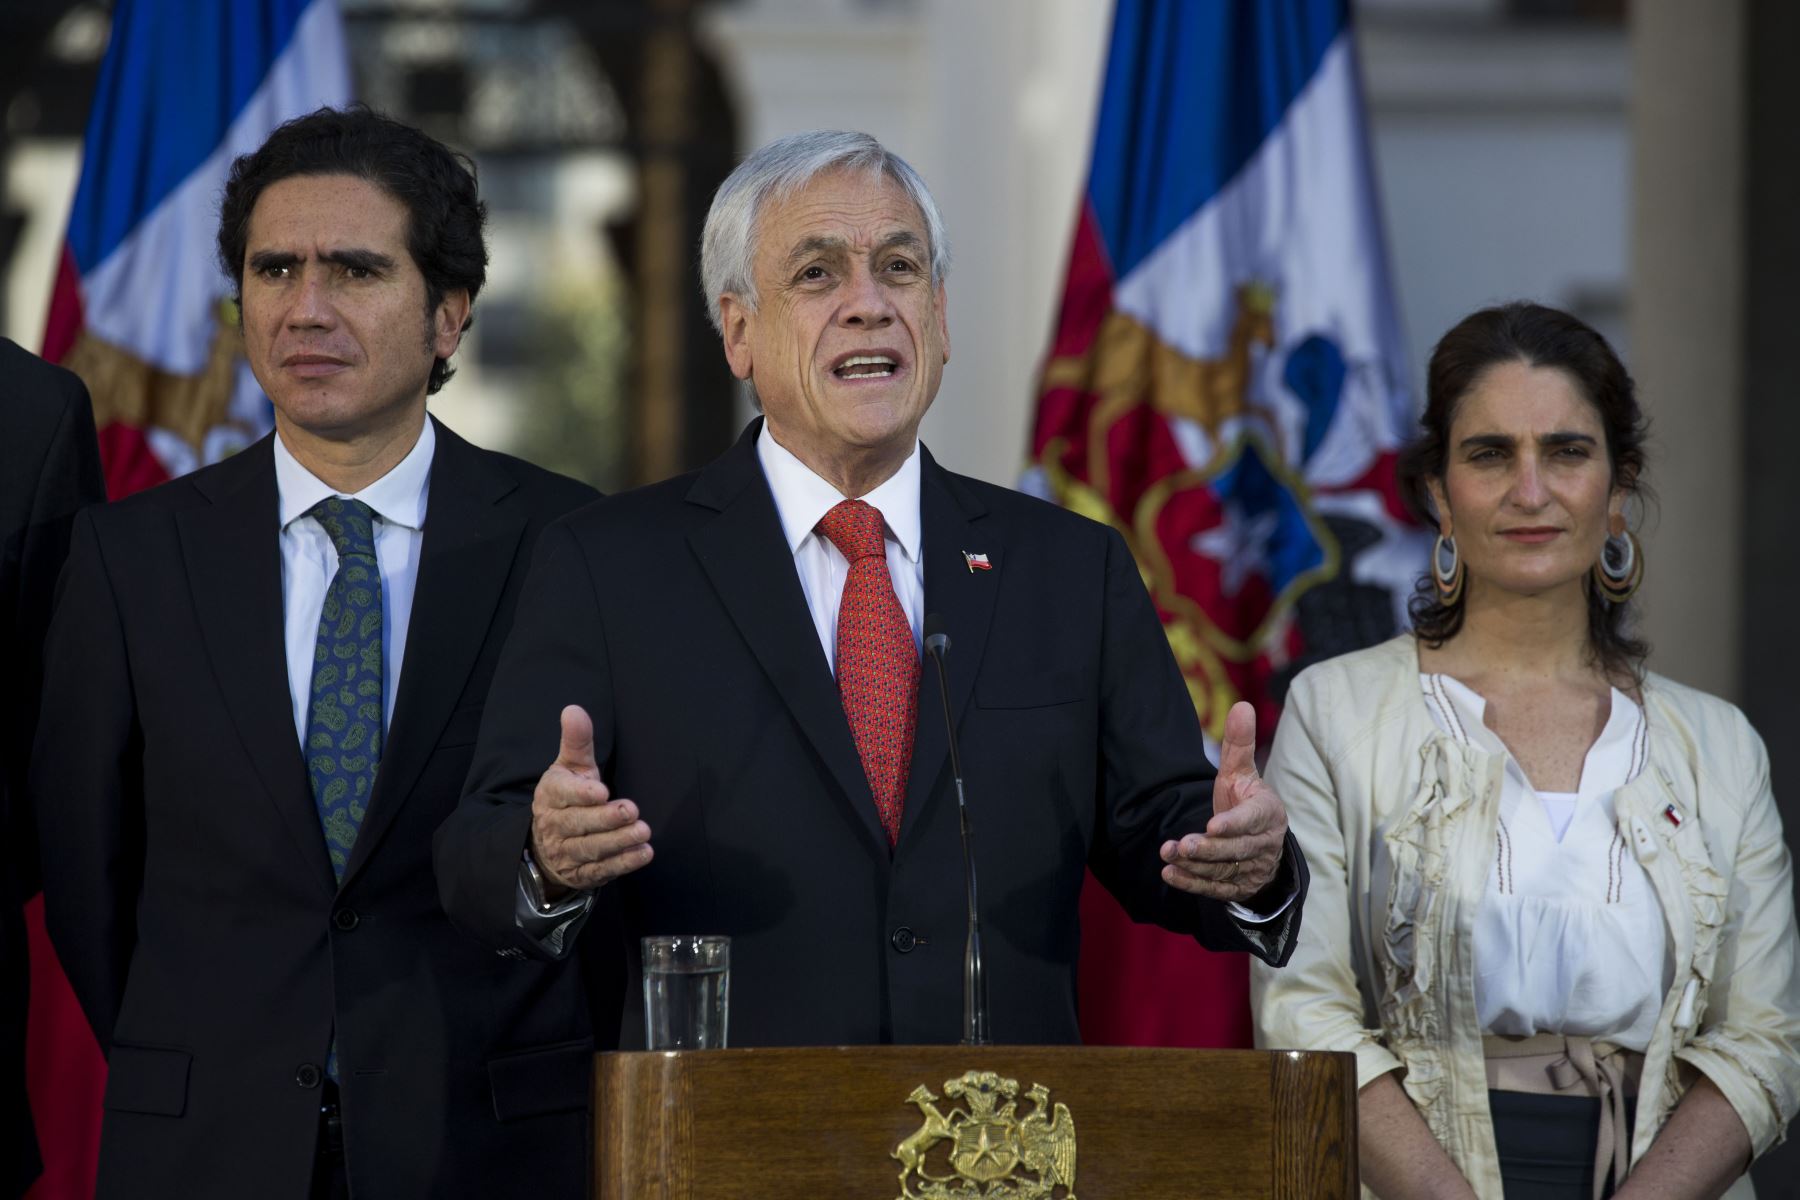 El presidente de Chile, Sebastián Piñera (C), habla durante la ceremonia de firma de un acuerdo de salario mínimo garantizado como parte de la agenda social promovida por el Gobierno para responder a las demandas de los ciudadanos después de semanas de protestas.
Foto: AFP